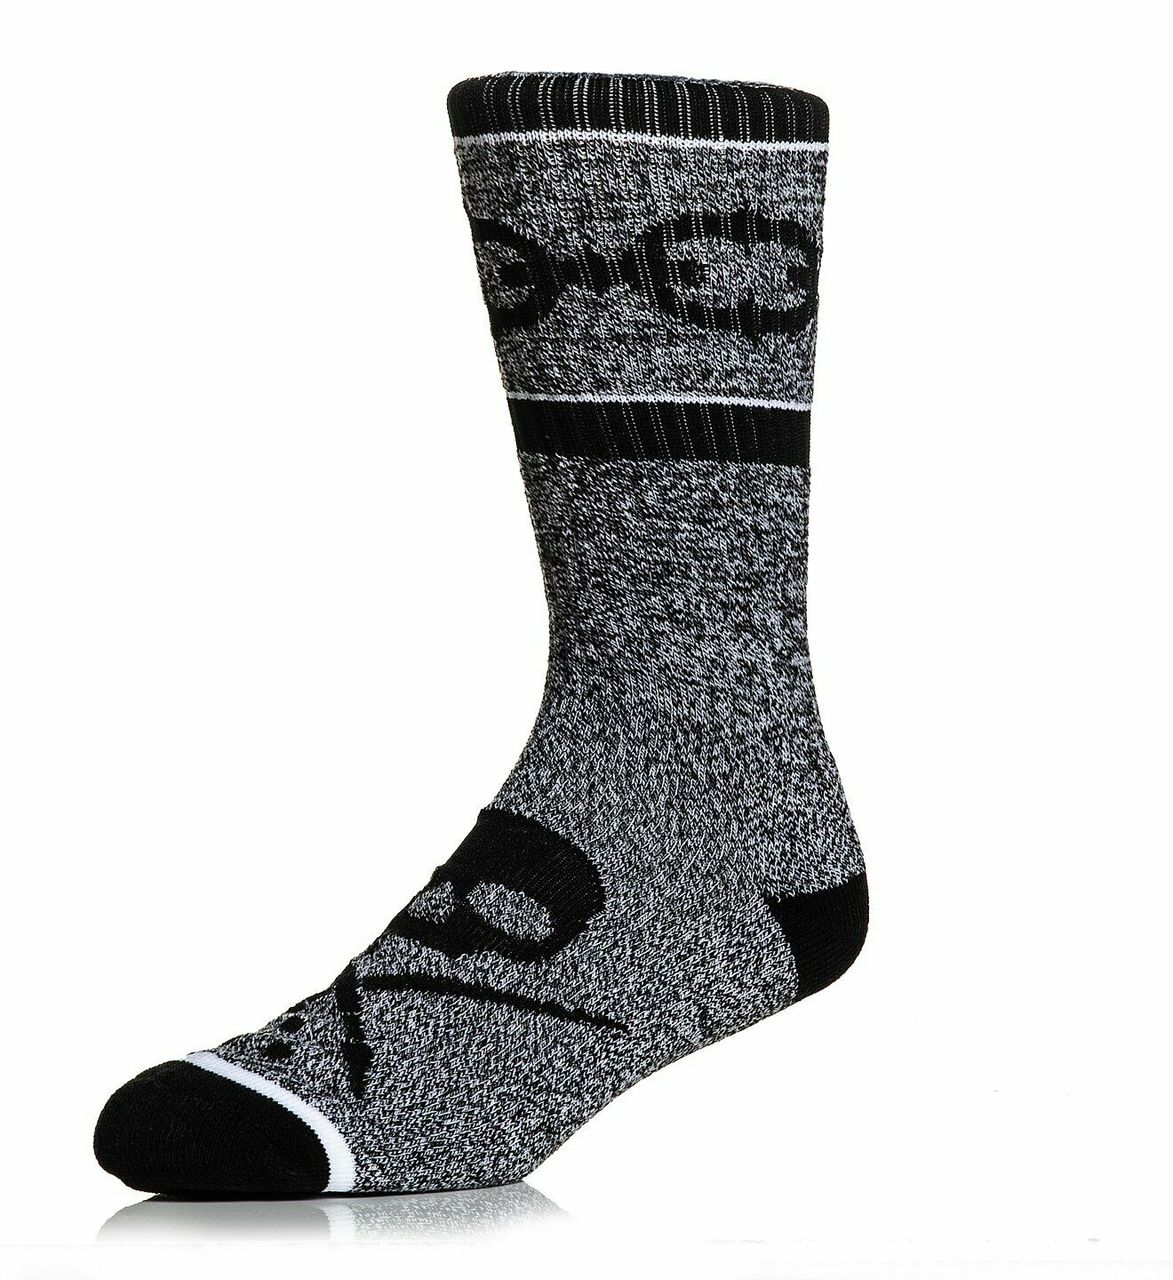 Linked Socks Grey by Sullen